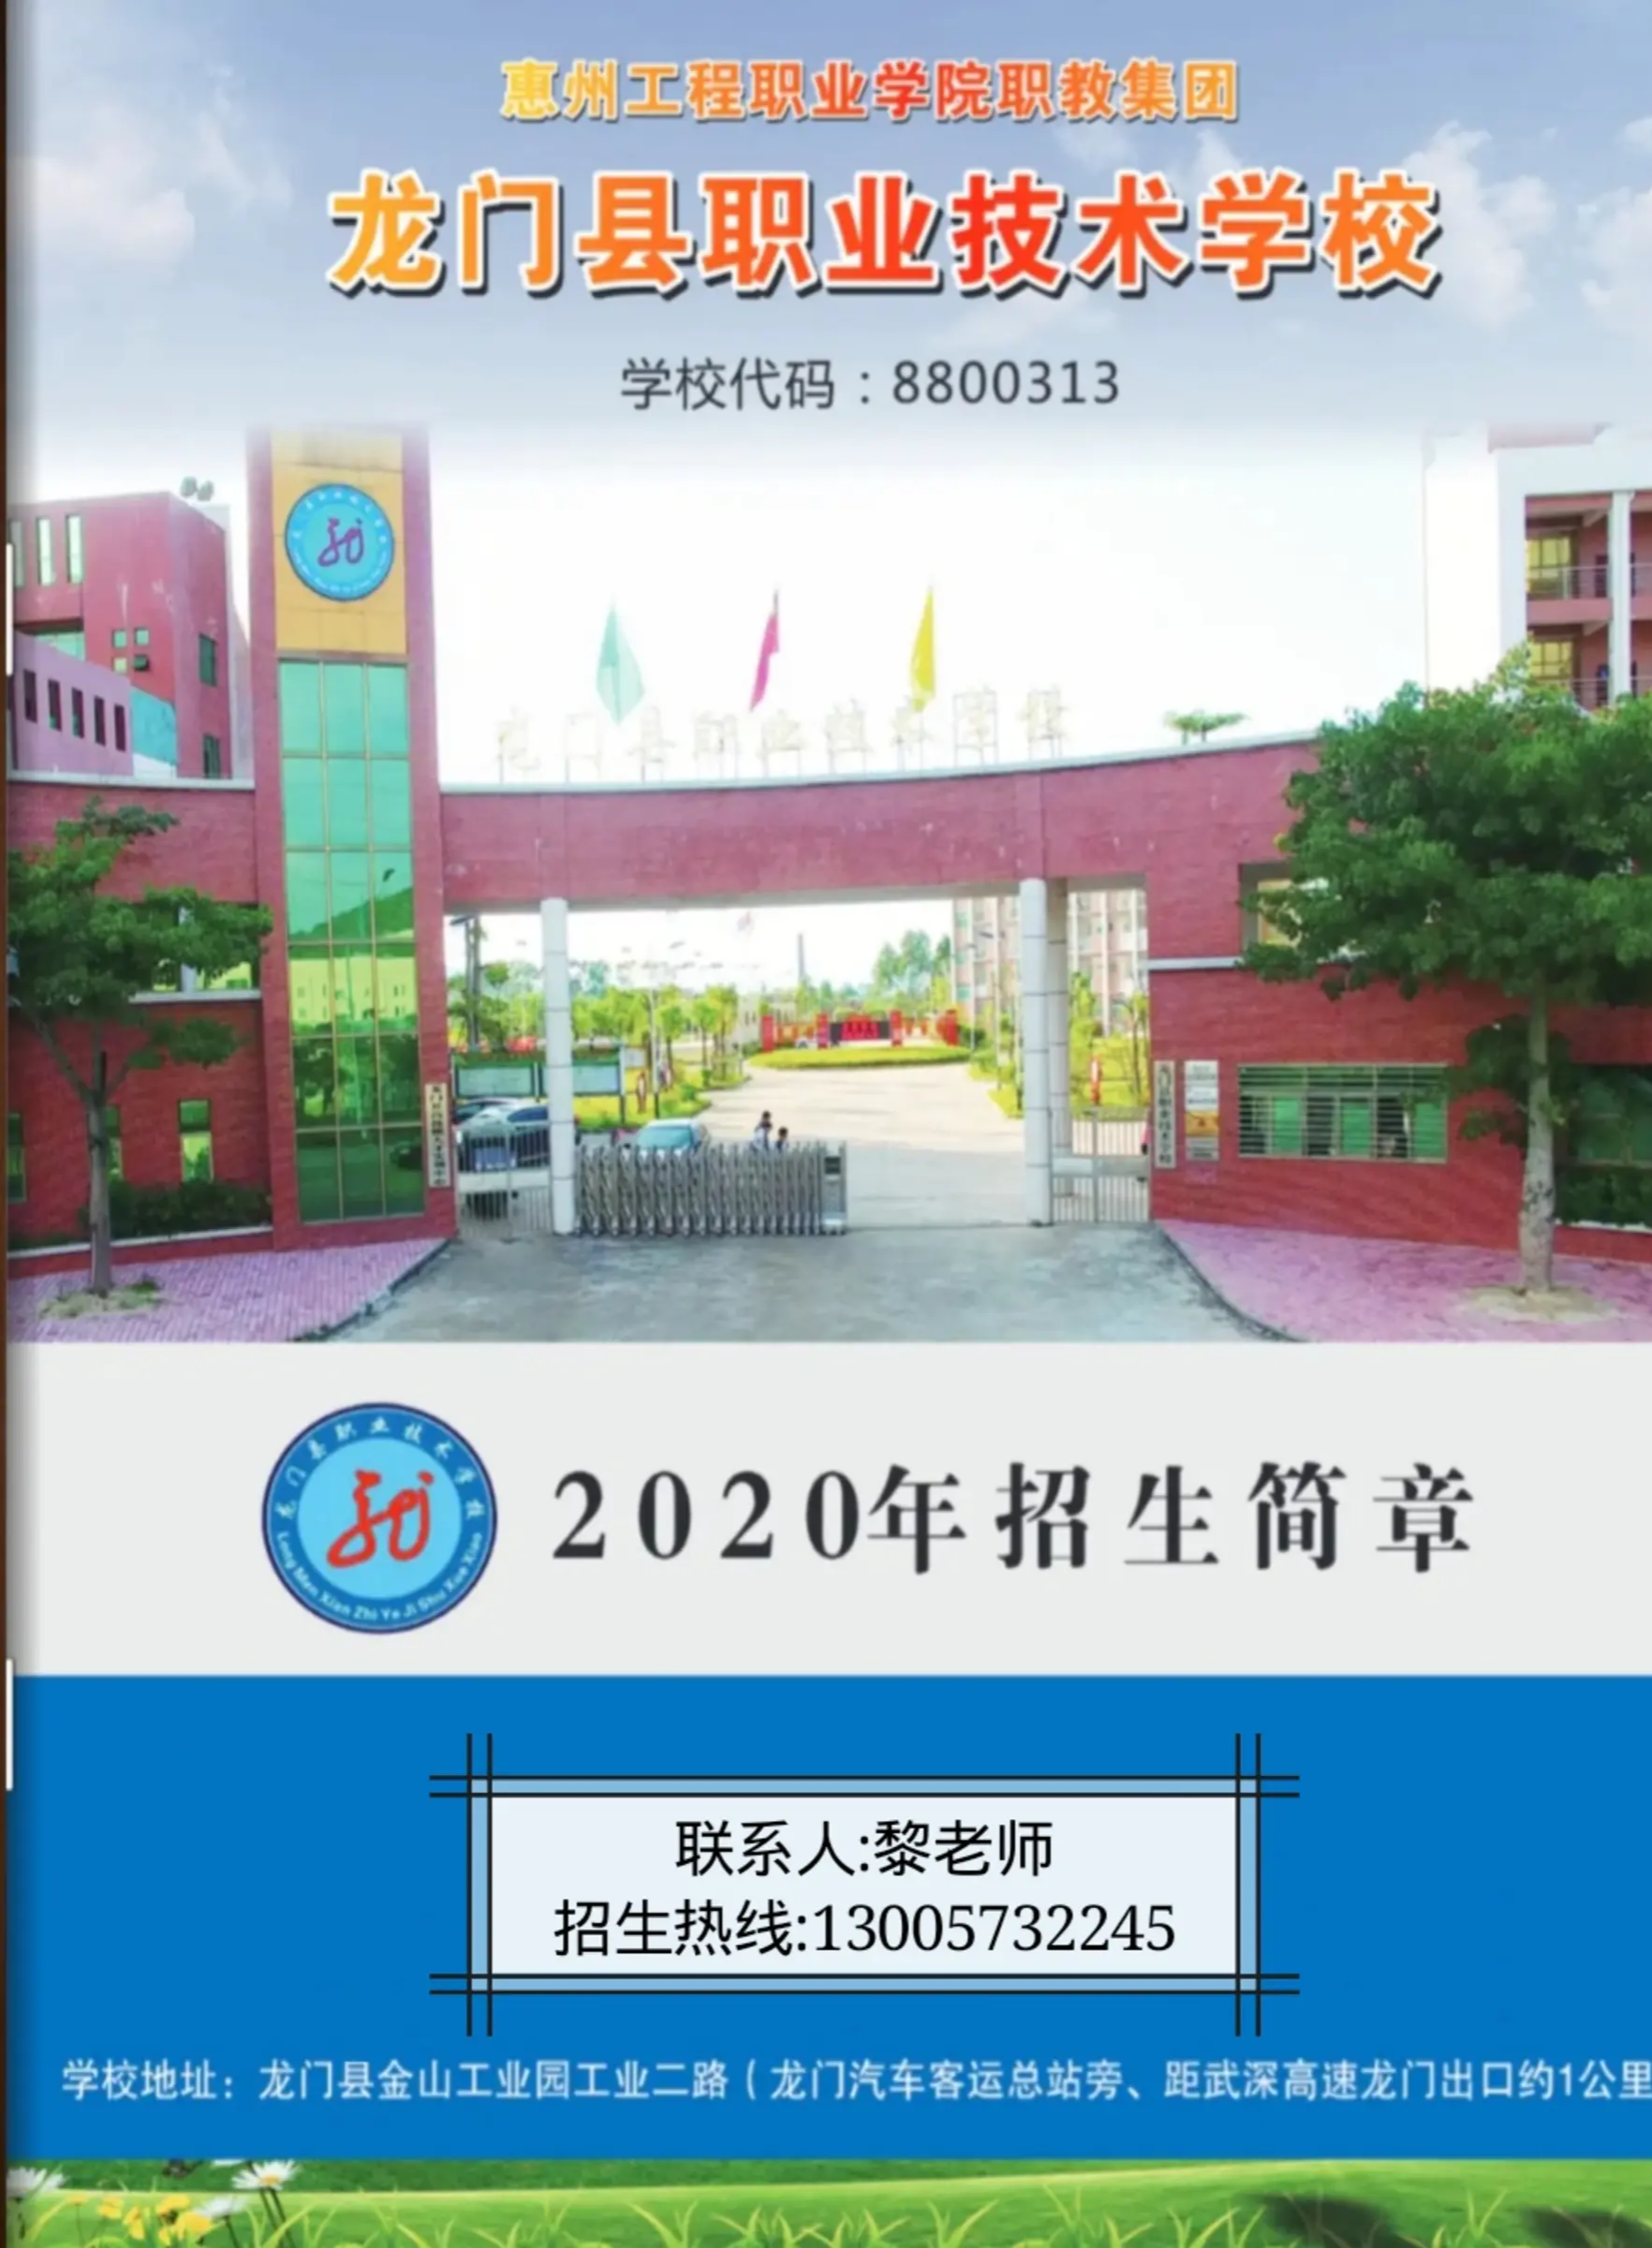 《龙门县职业技术学校2020年招生简章》